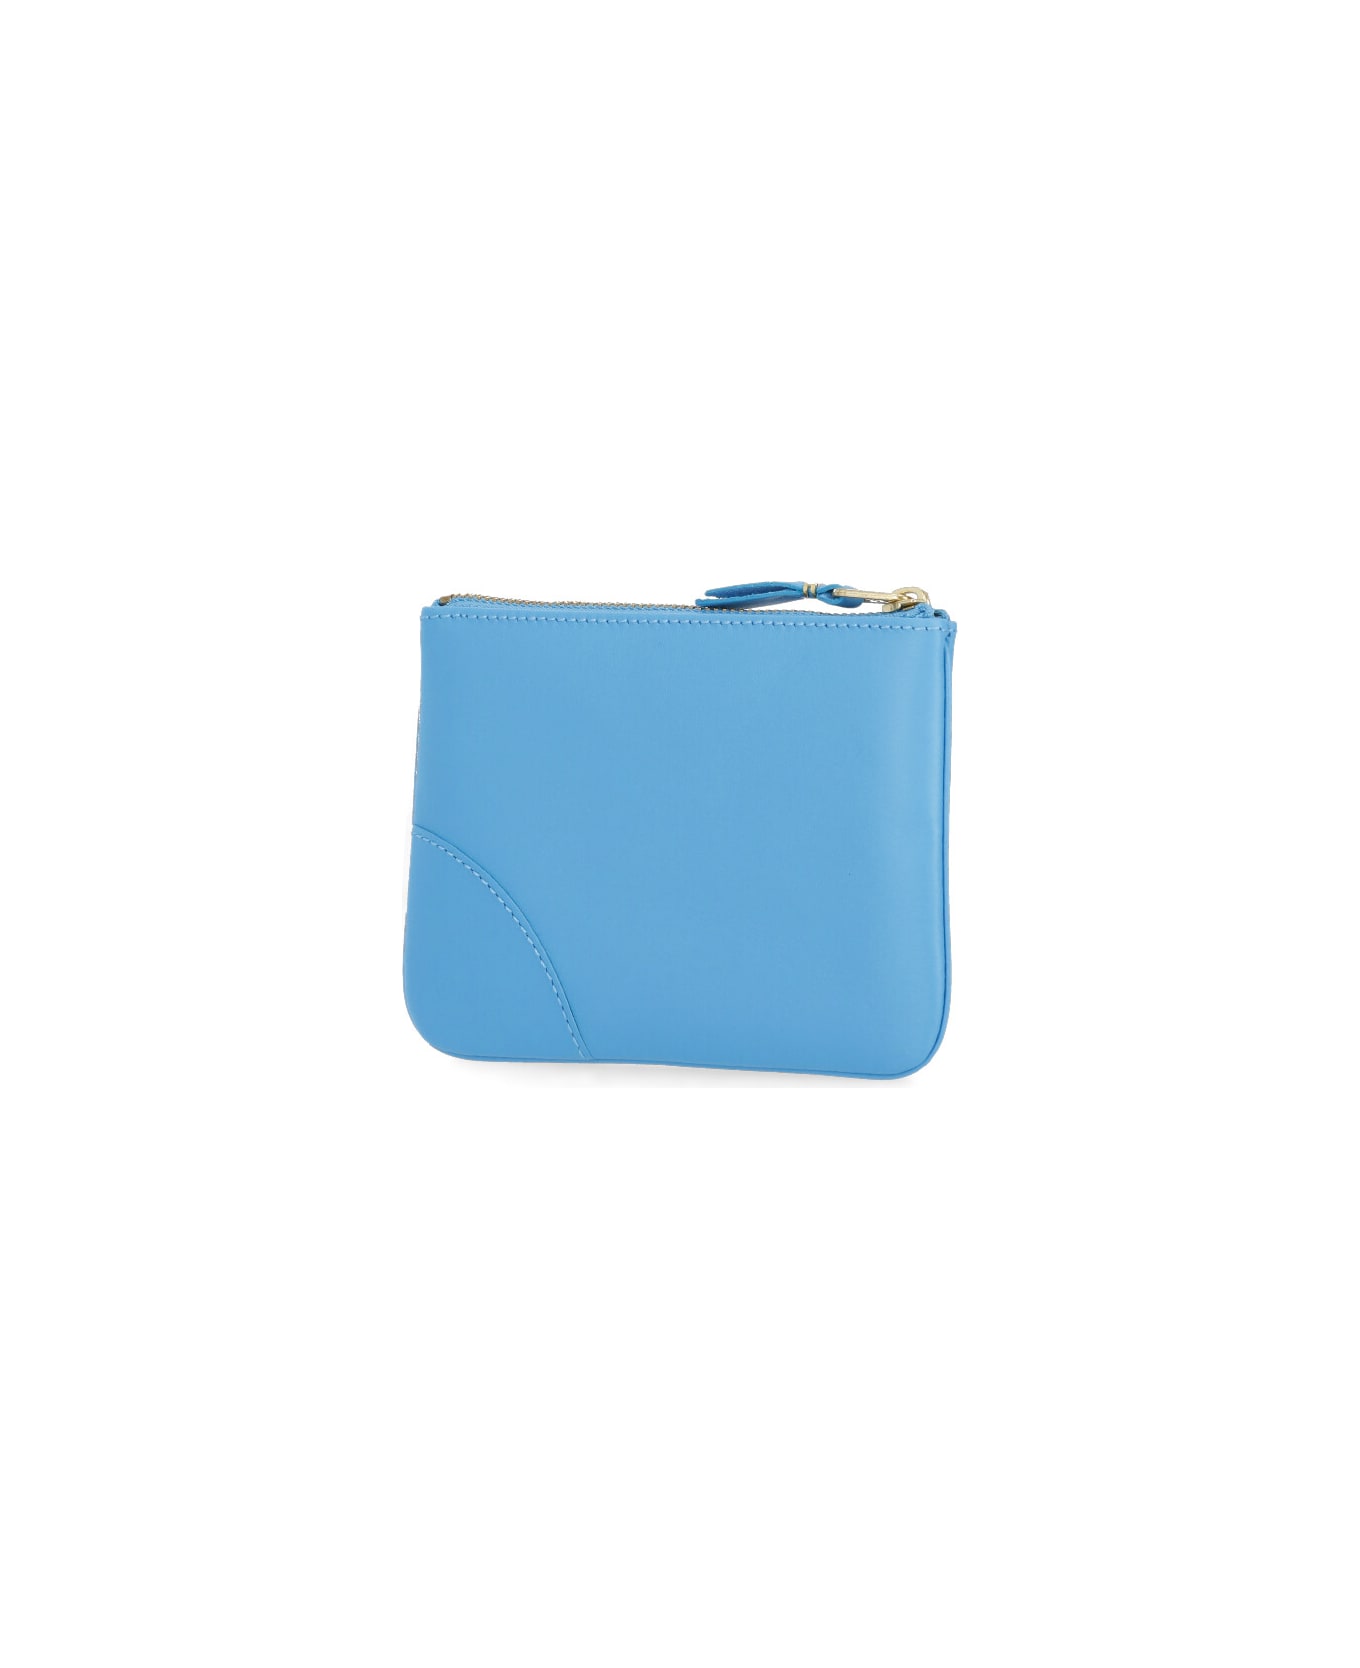 Comme des Garçons Wallet Wallet With Logo - Light Blue 財布